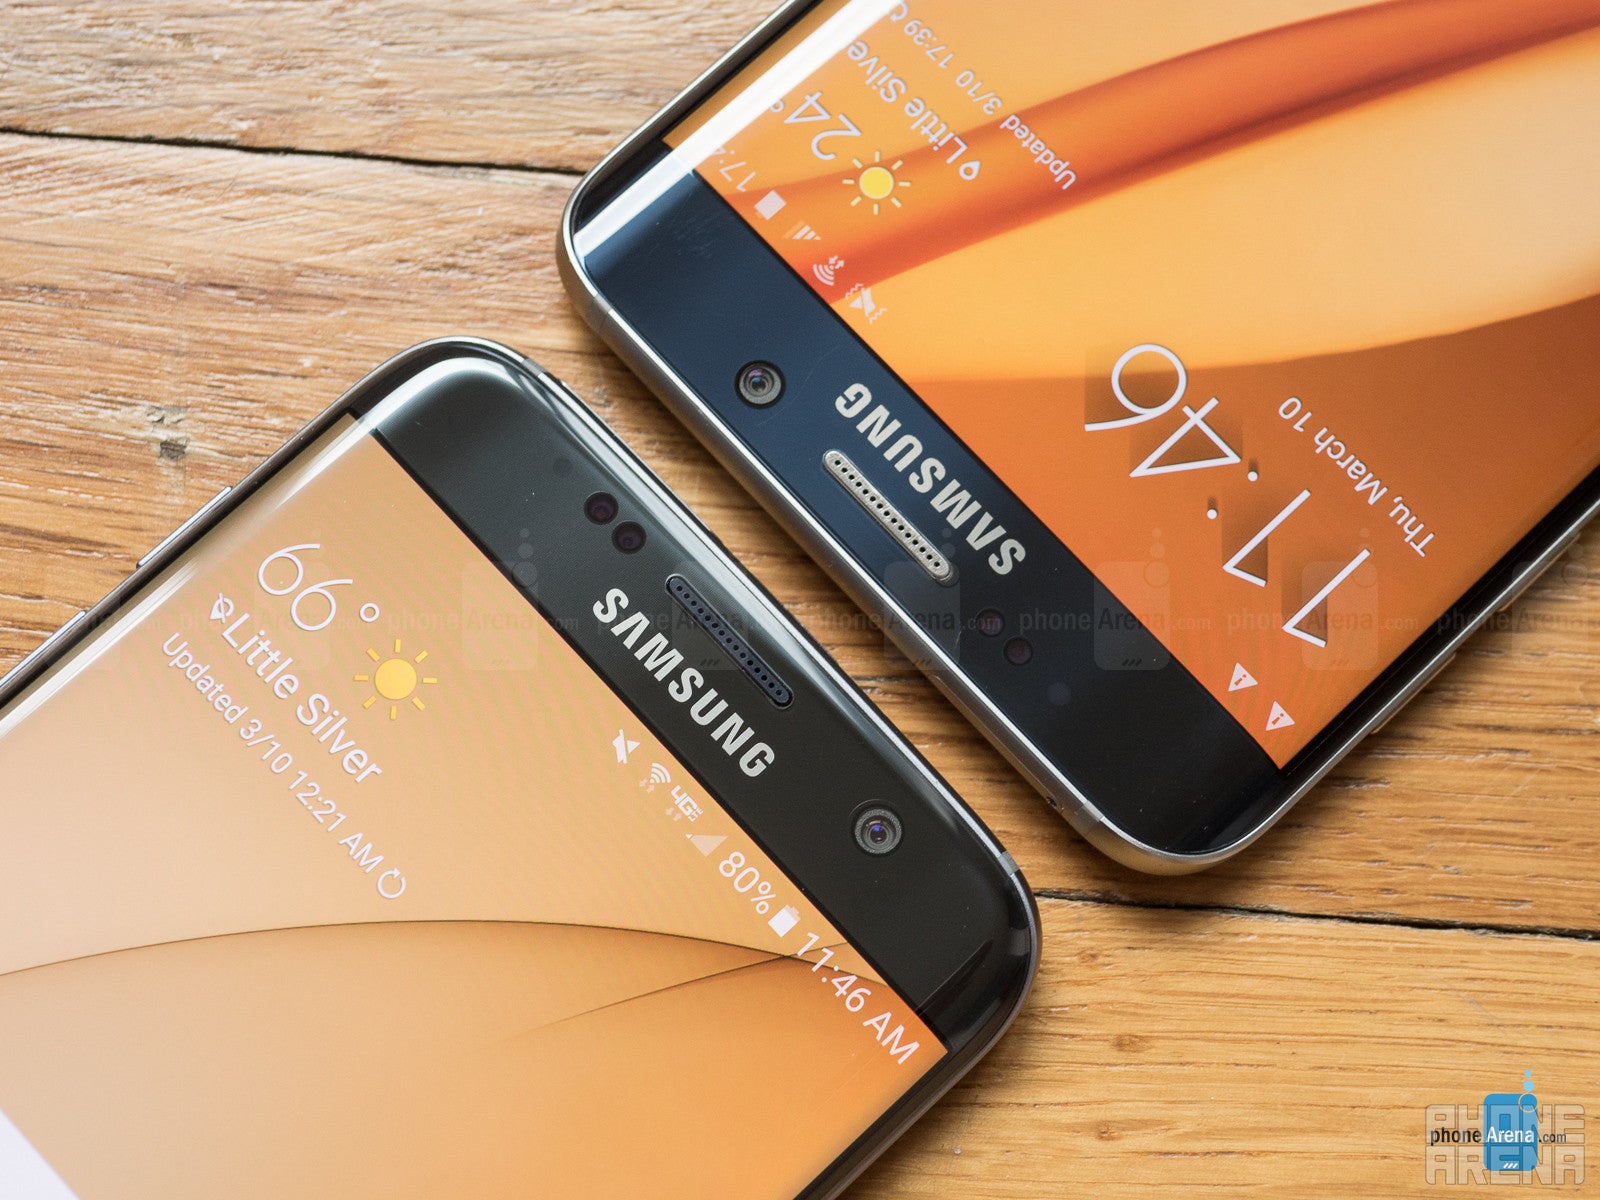 Samsung Galaxy S7 edge vs Samsung Galaxy S6 edge+